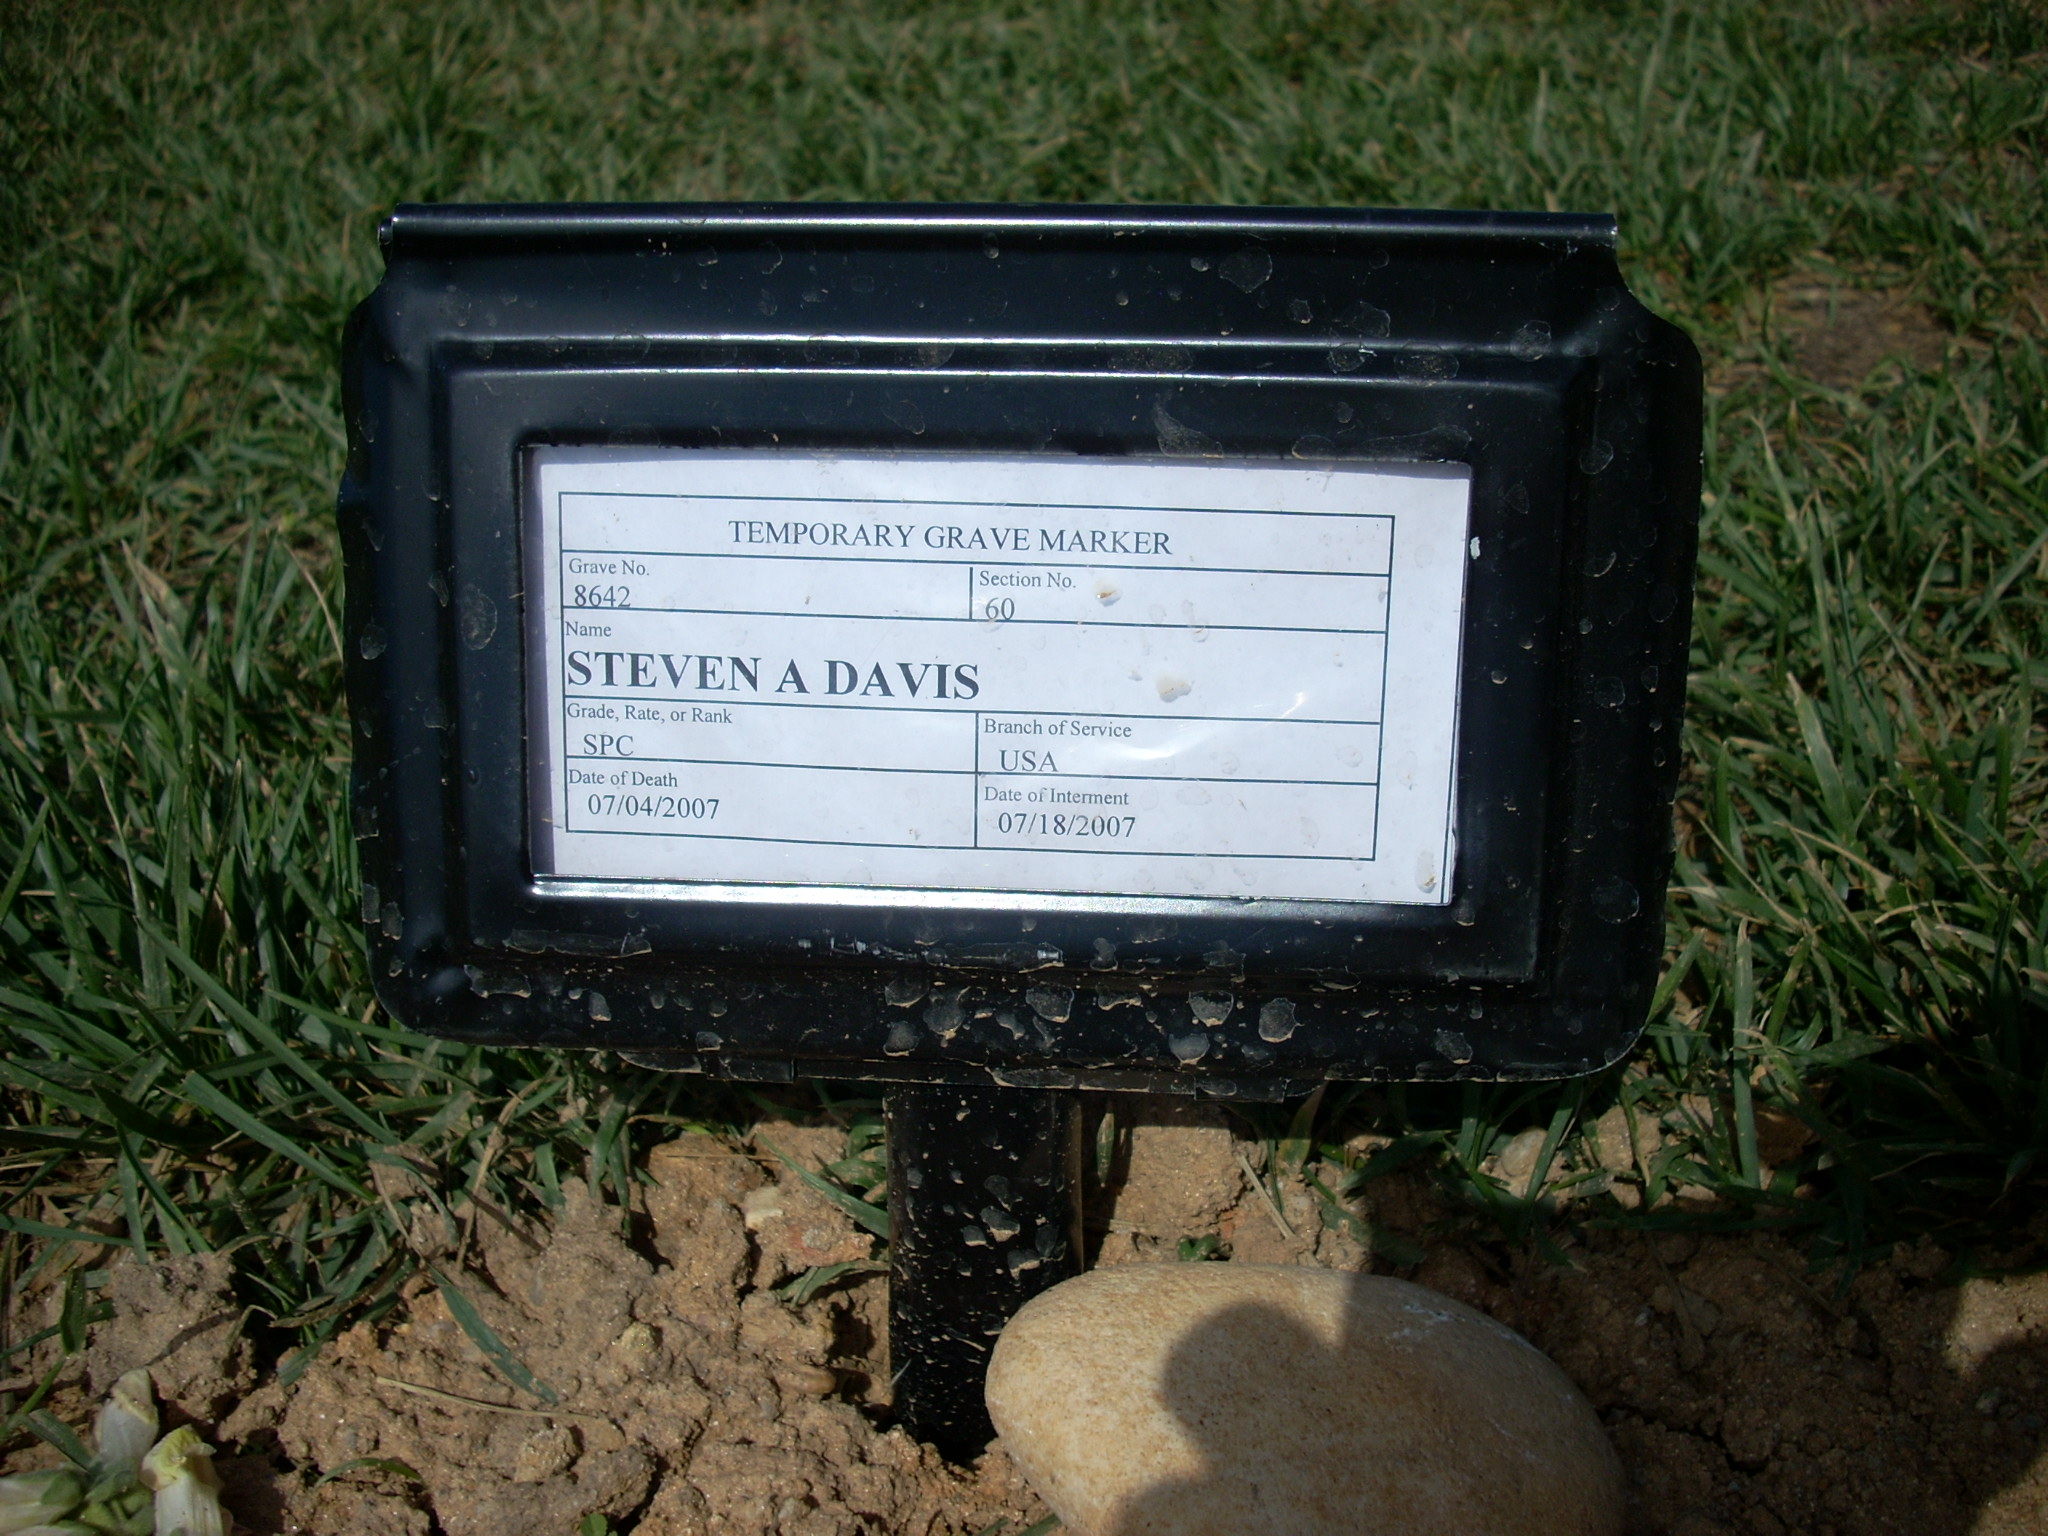 sadavis-gravesite-photo-july-2007-001